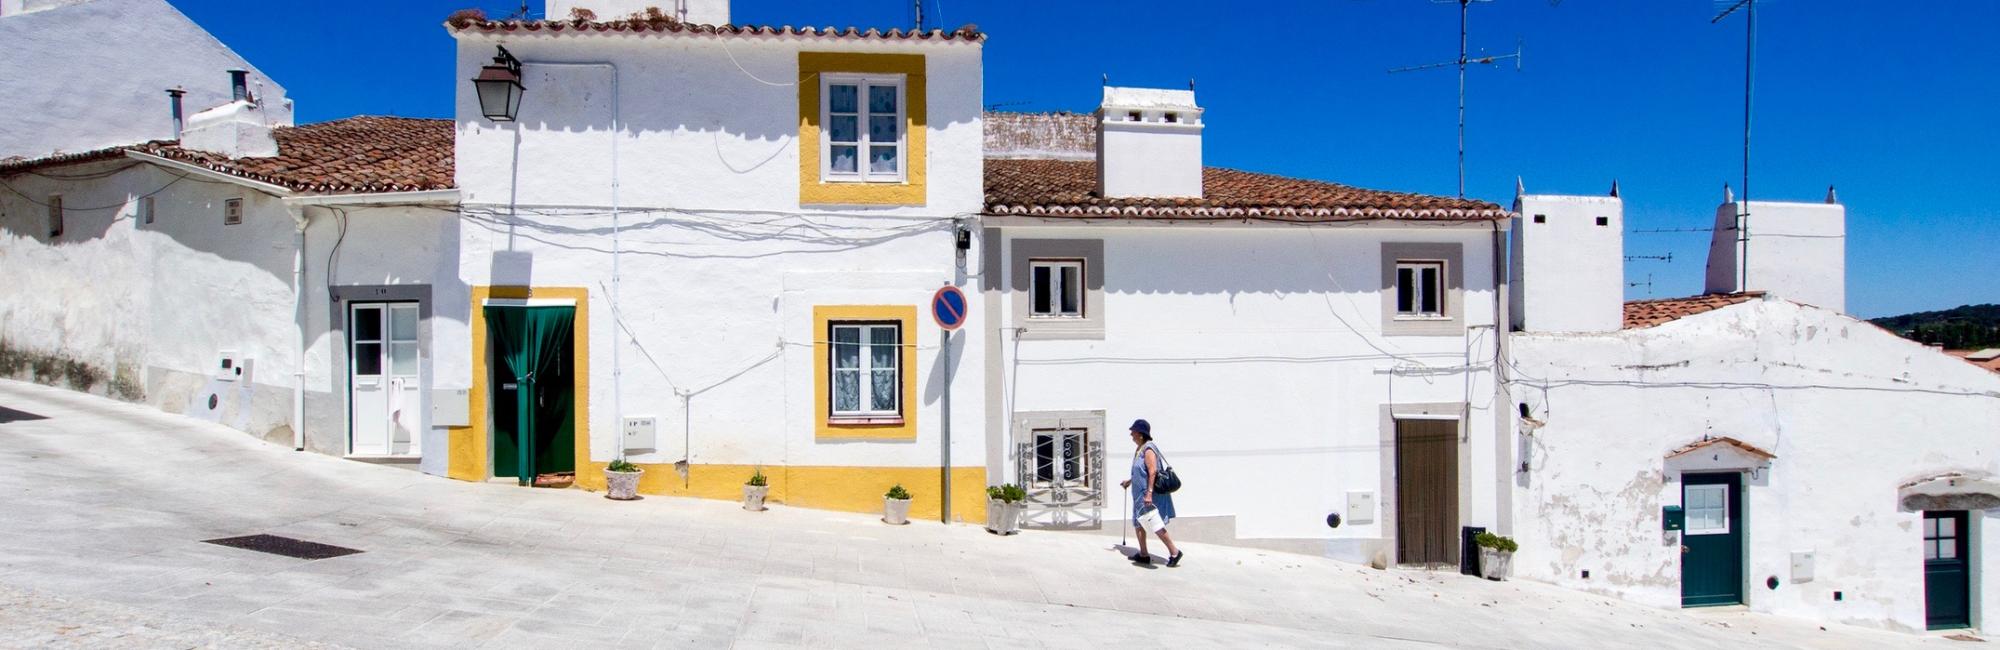 Fietsvakantie Alentejo, Portugal - van de Costa Azul naar Évora fietsen